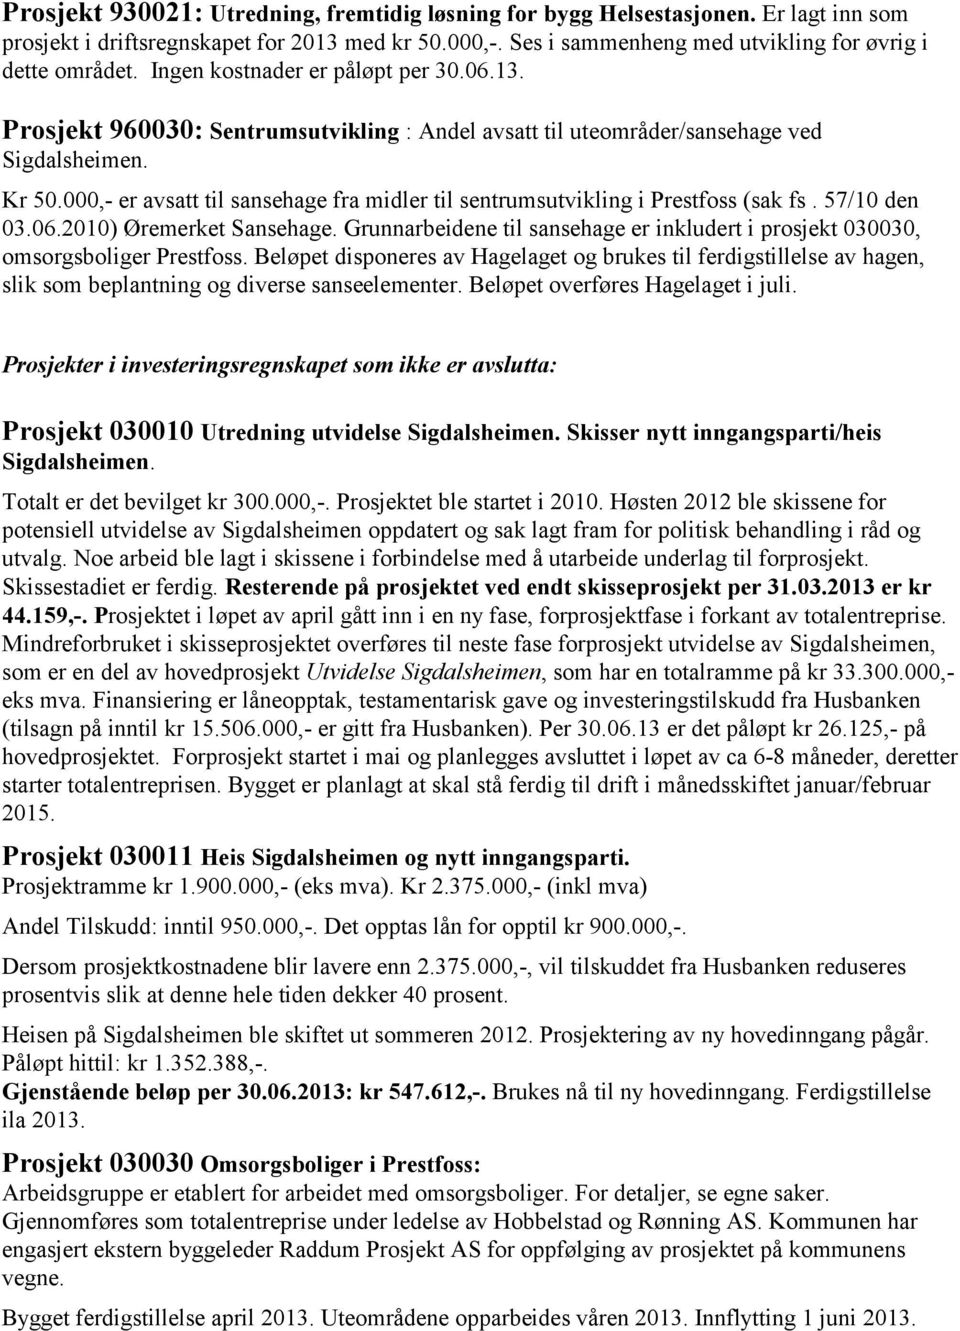 000,- er avsatt til sansehage fra midler til sentrumsutvikling i Prestfoss (sak fs. 57/10 den 03.06.2010) Øremerket Sansehage.